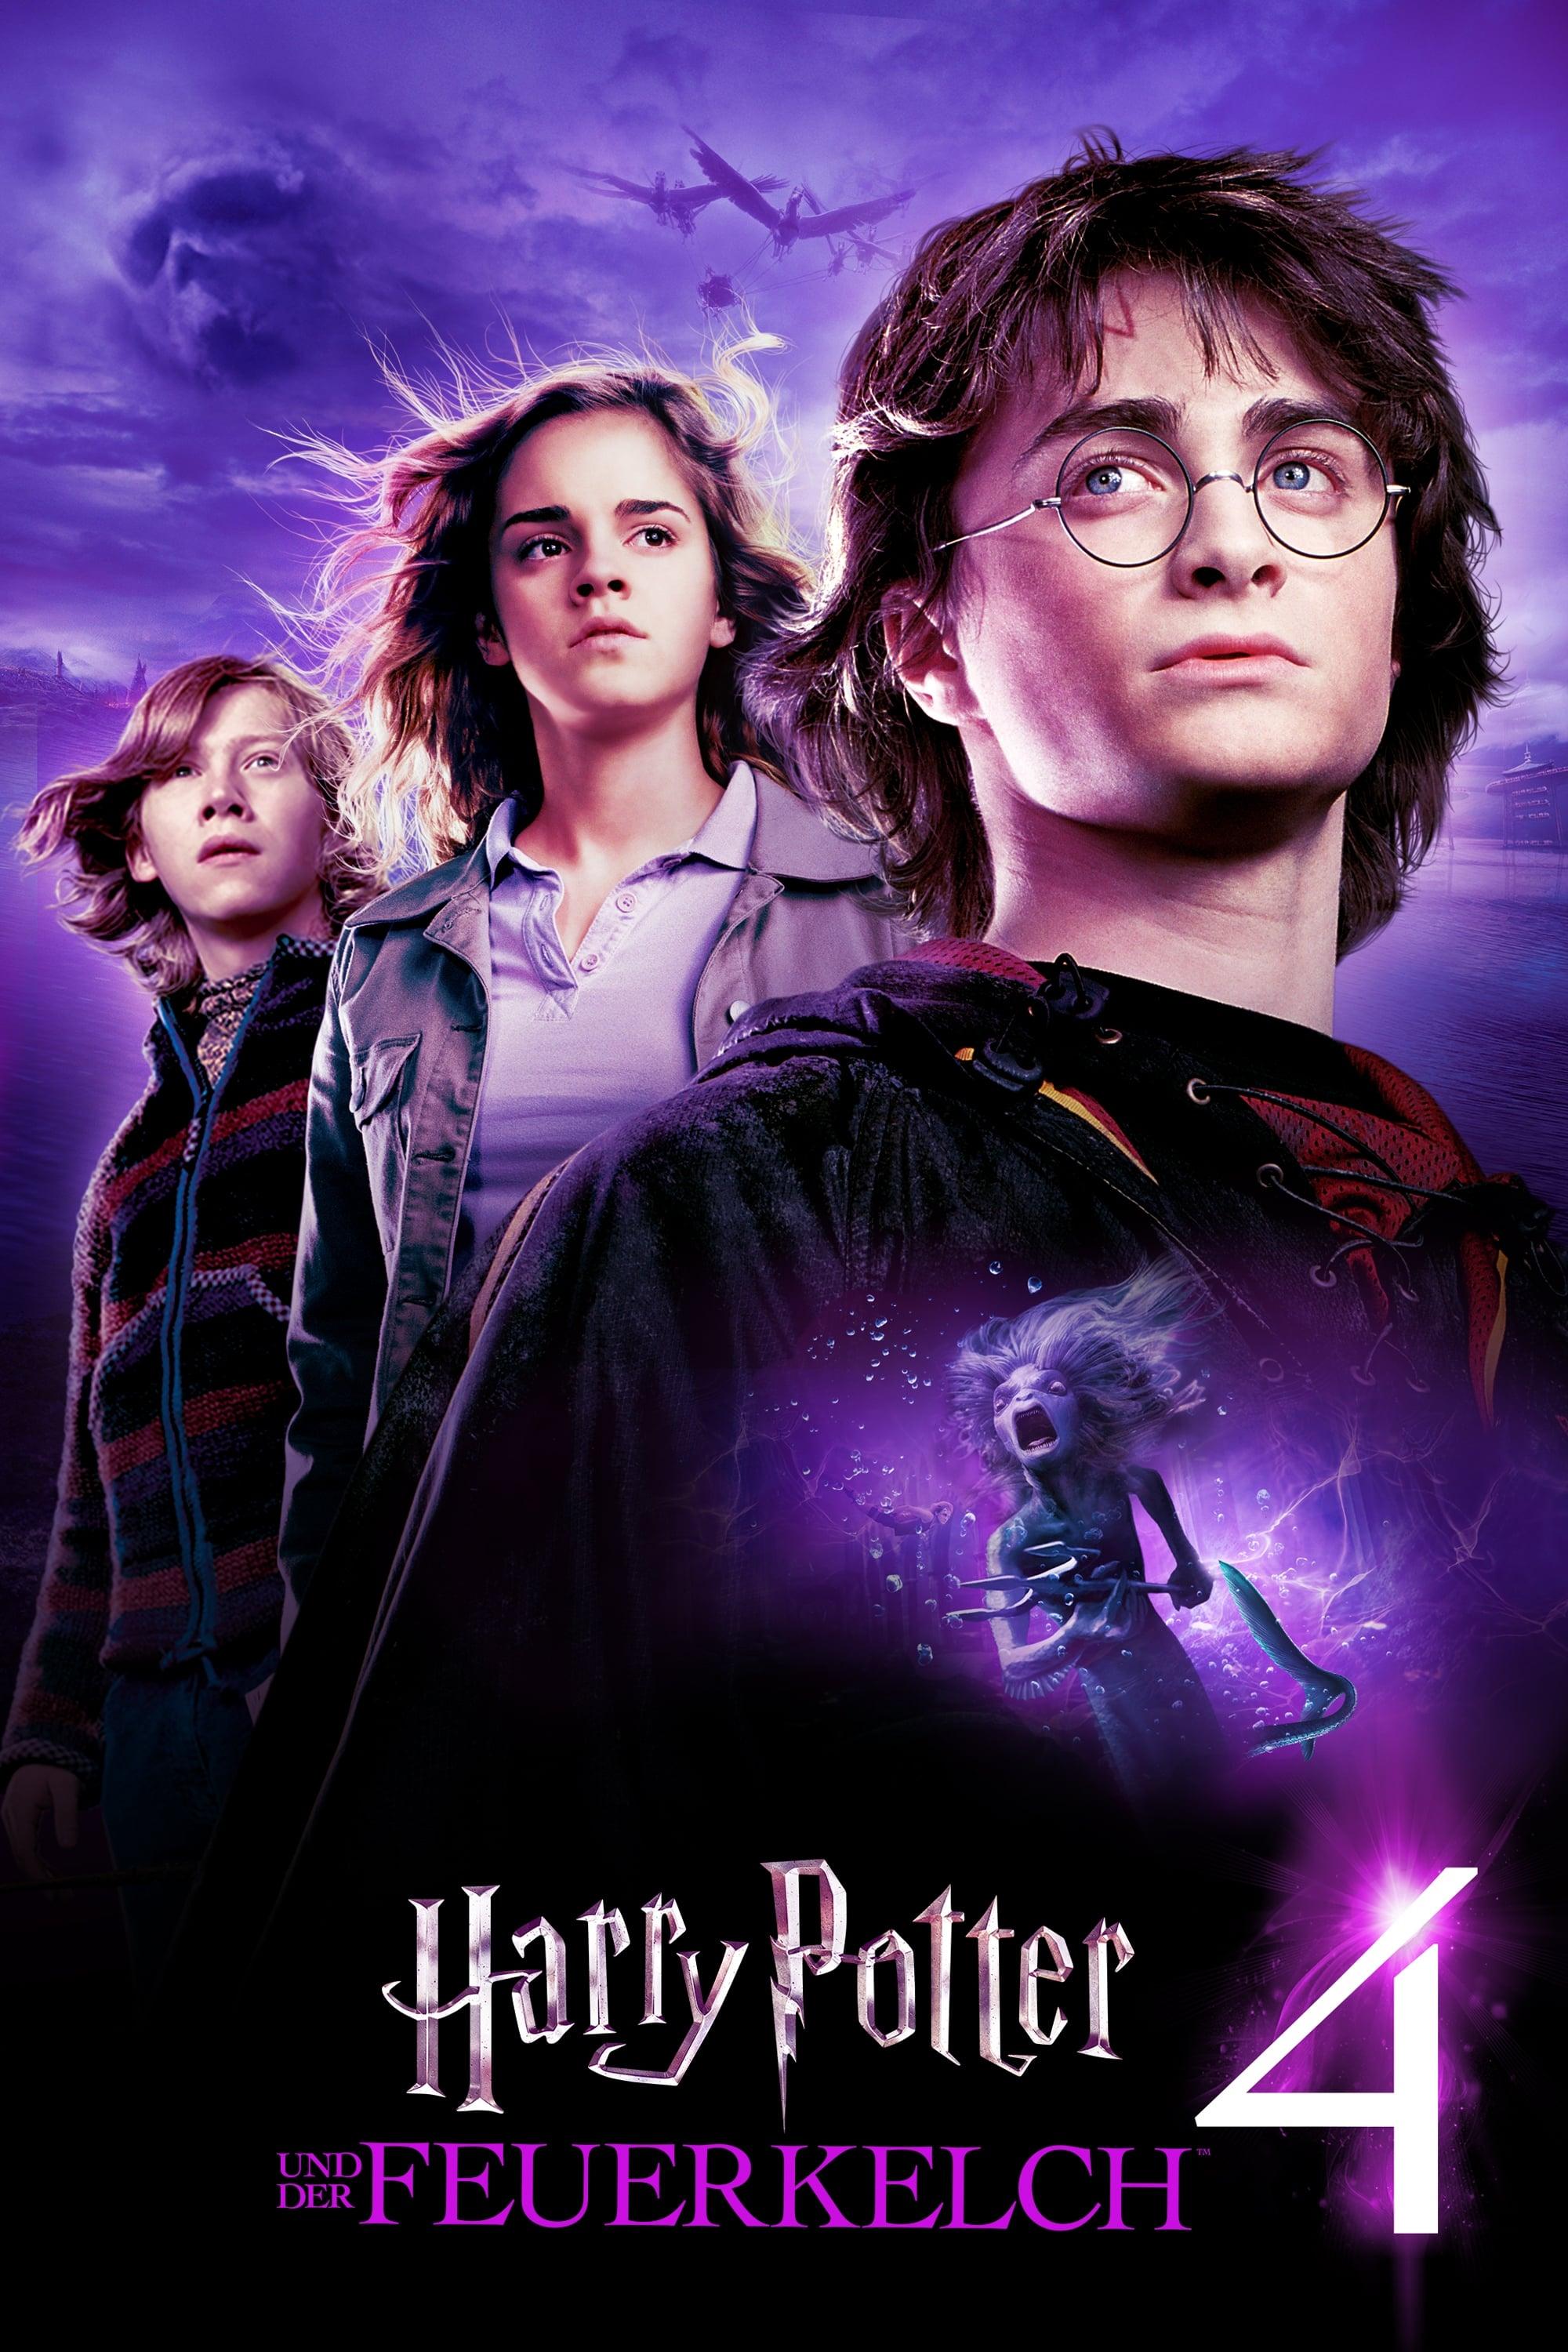 Harry Potter und der Feuerkelch poster